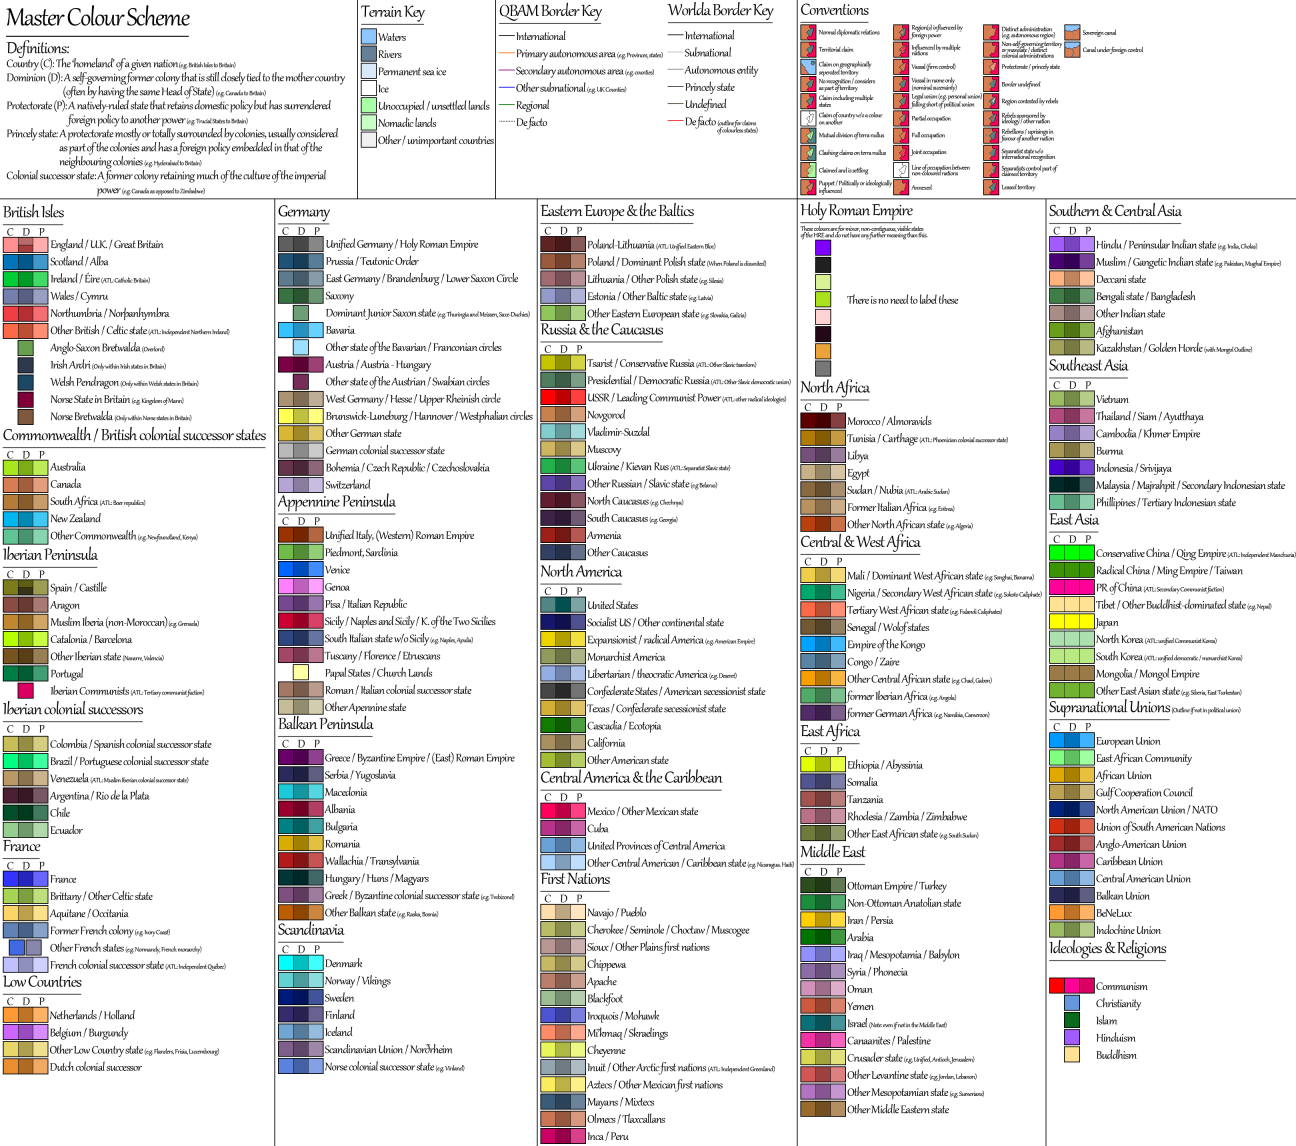 Master Colour Scheme 2.png